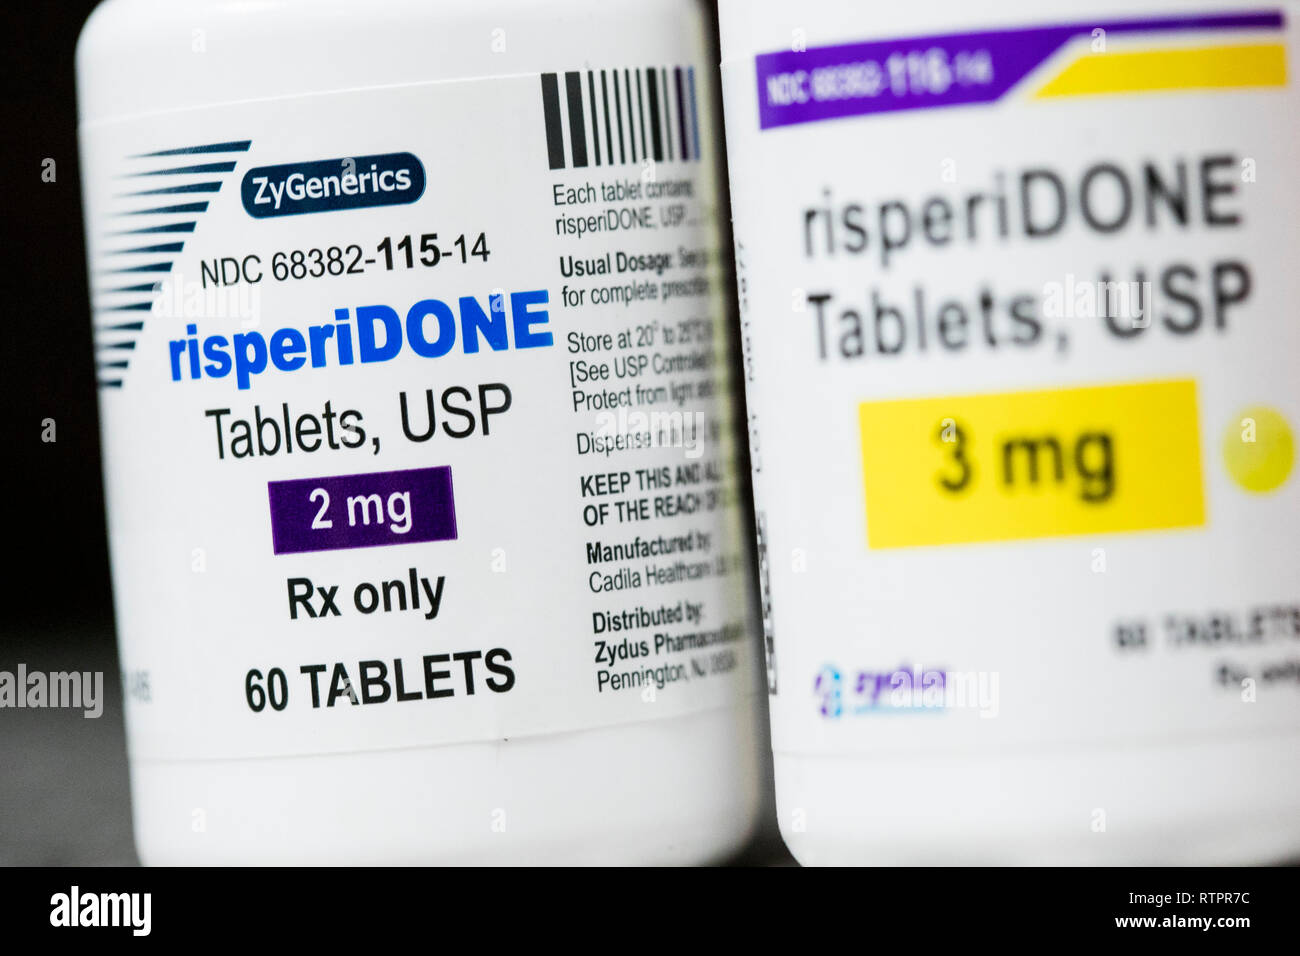 Bottiglie di Risperidone prescription pharmaceuticals fotografato in una farmacia. Foto Stock